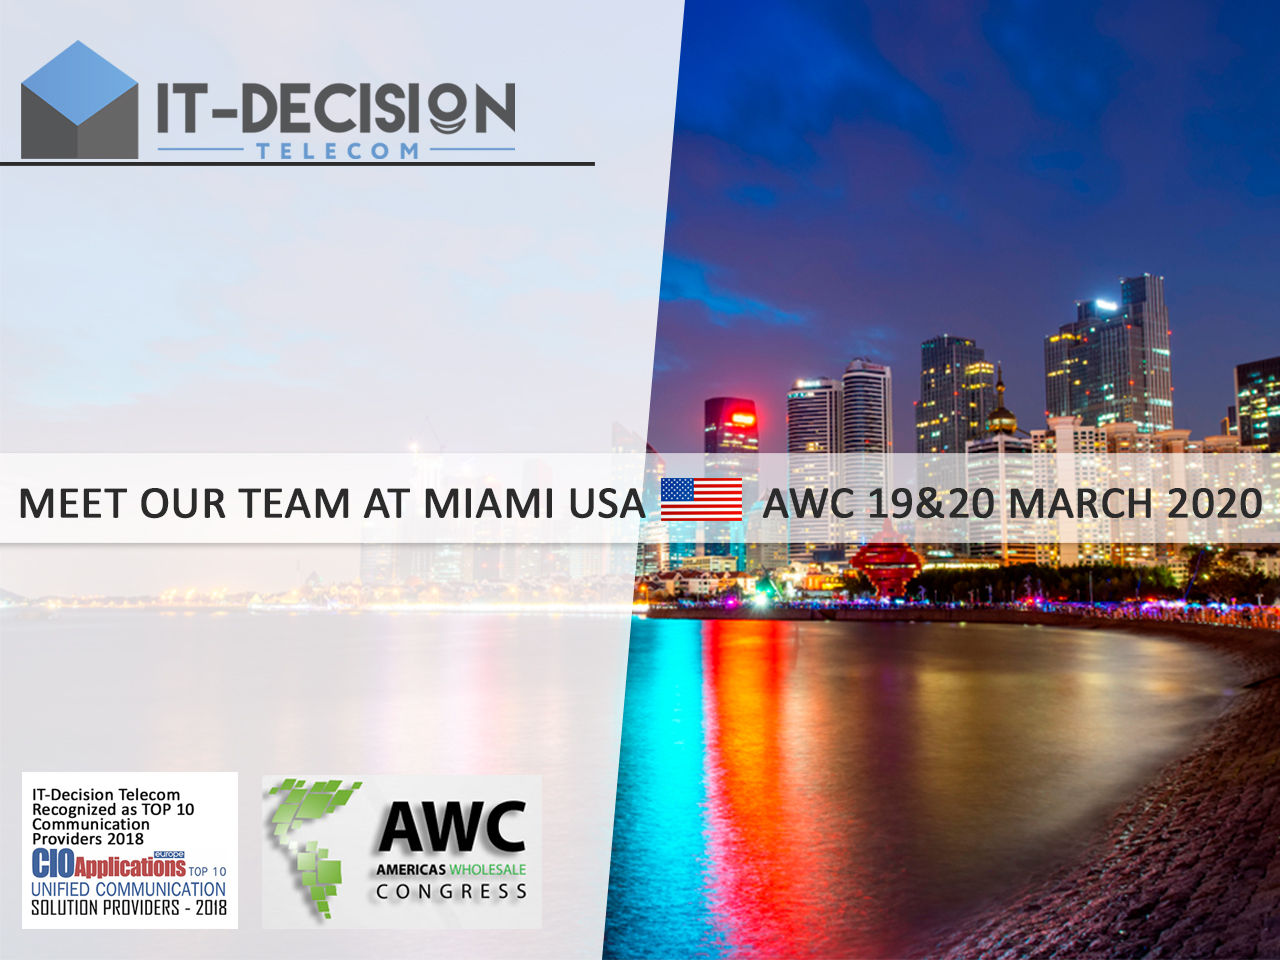 ITD Telecom - ¡Patrocinador de AWC 2020 en Miami!